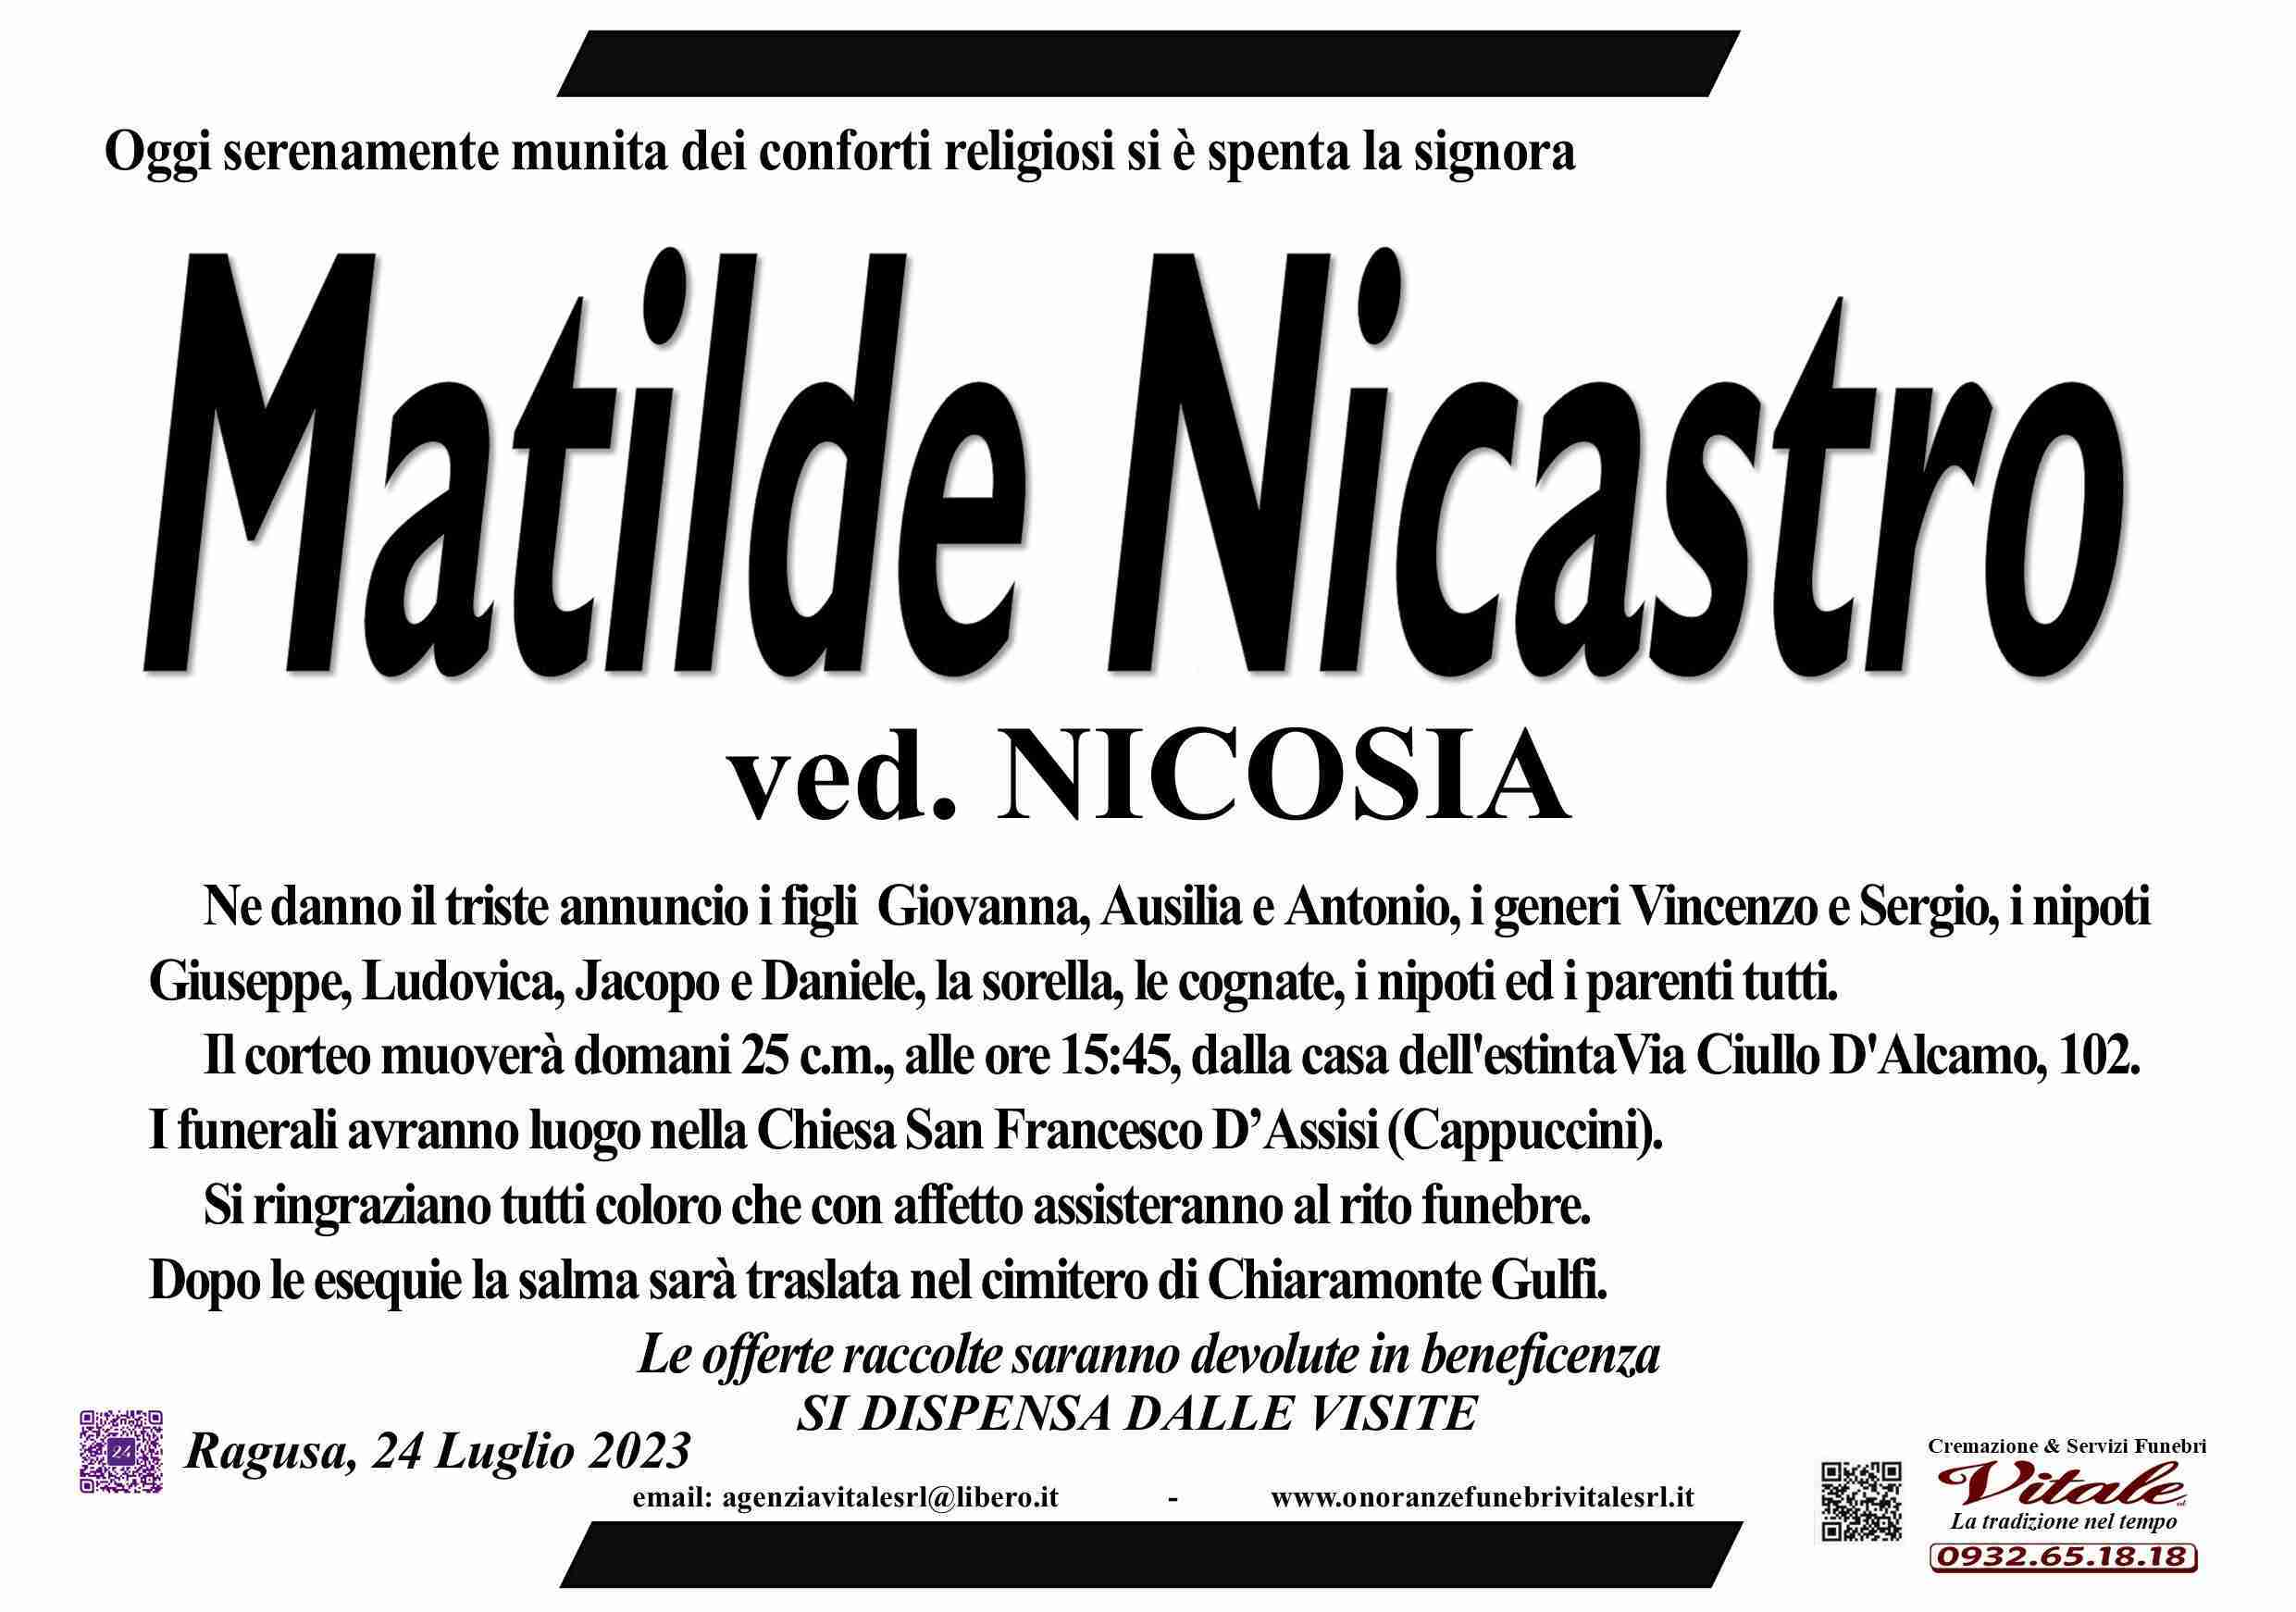 Matilde Nicastro